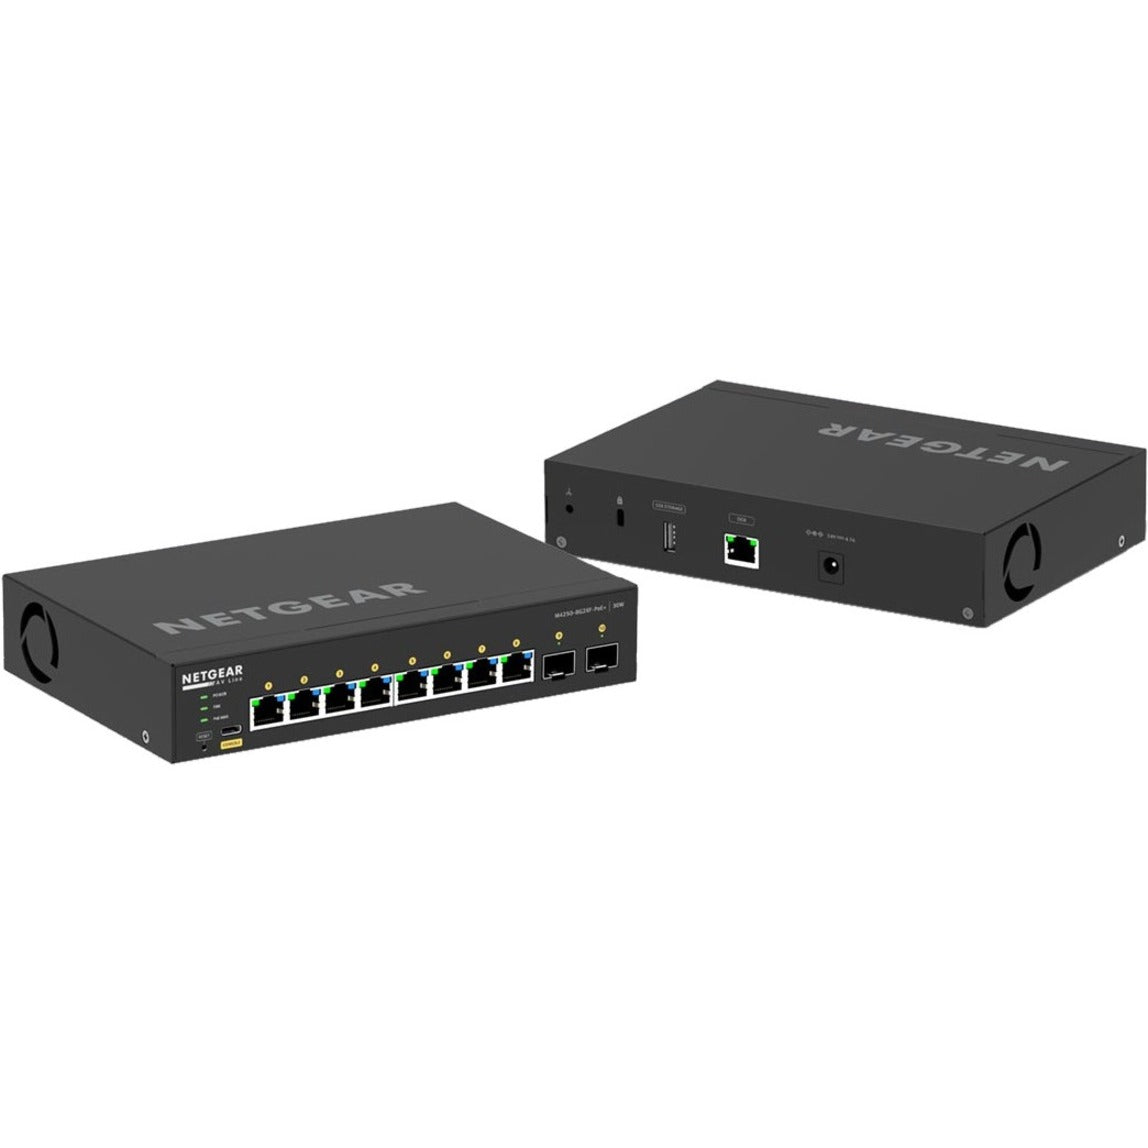 Netgear GSM4210PX-100NAS AV Line M4250 Ethernet Switch, 8-Port Gigabit PoE+, 10GBase-T/10GBase-X, Fanless